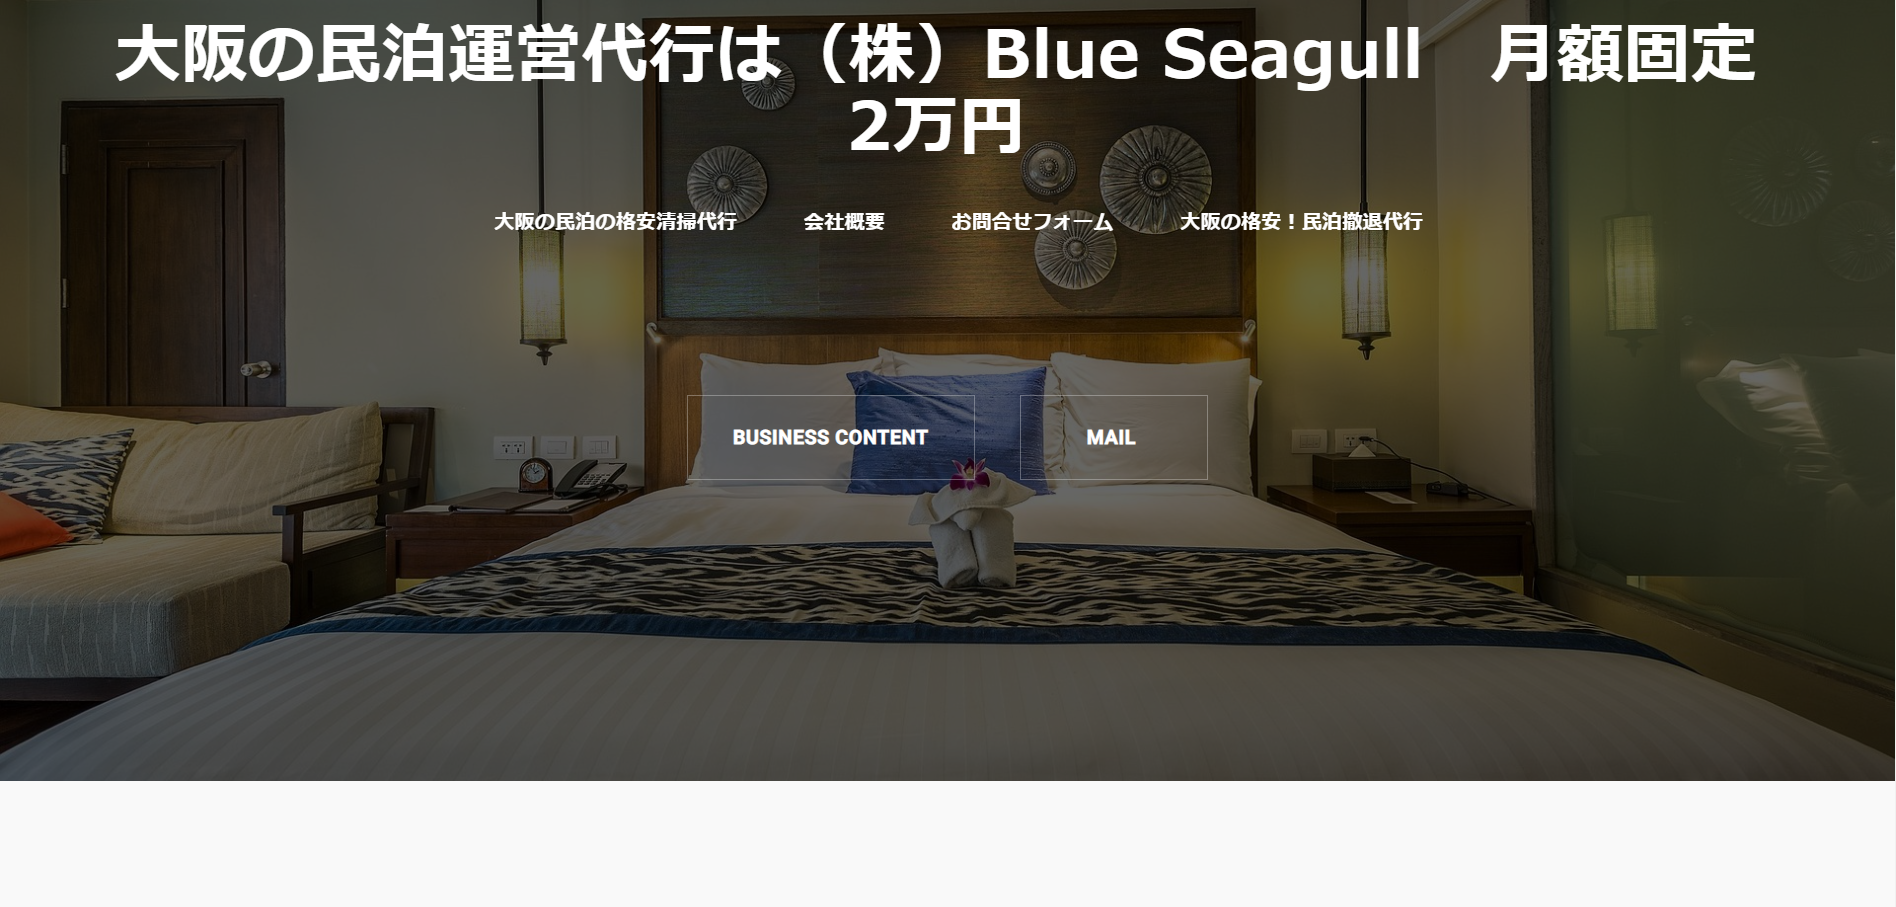 Blue Seagull公式キャプチャ